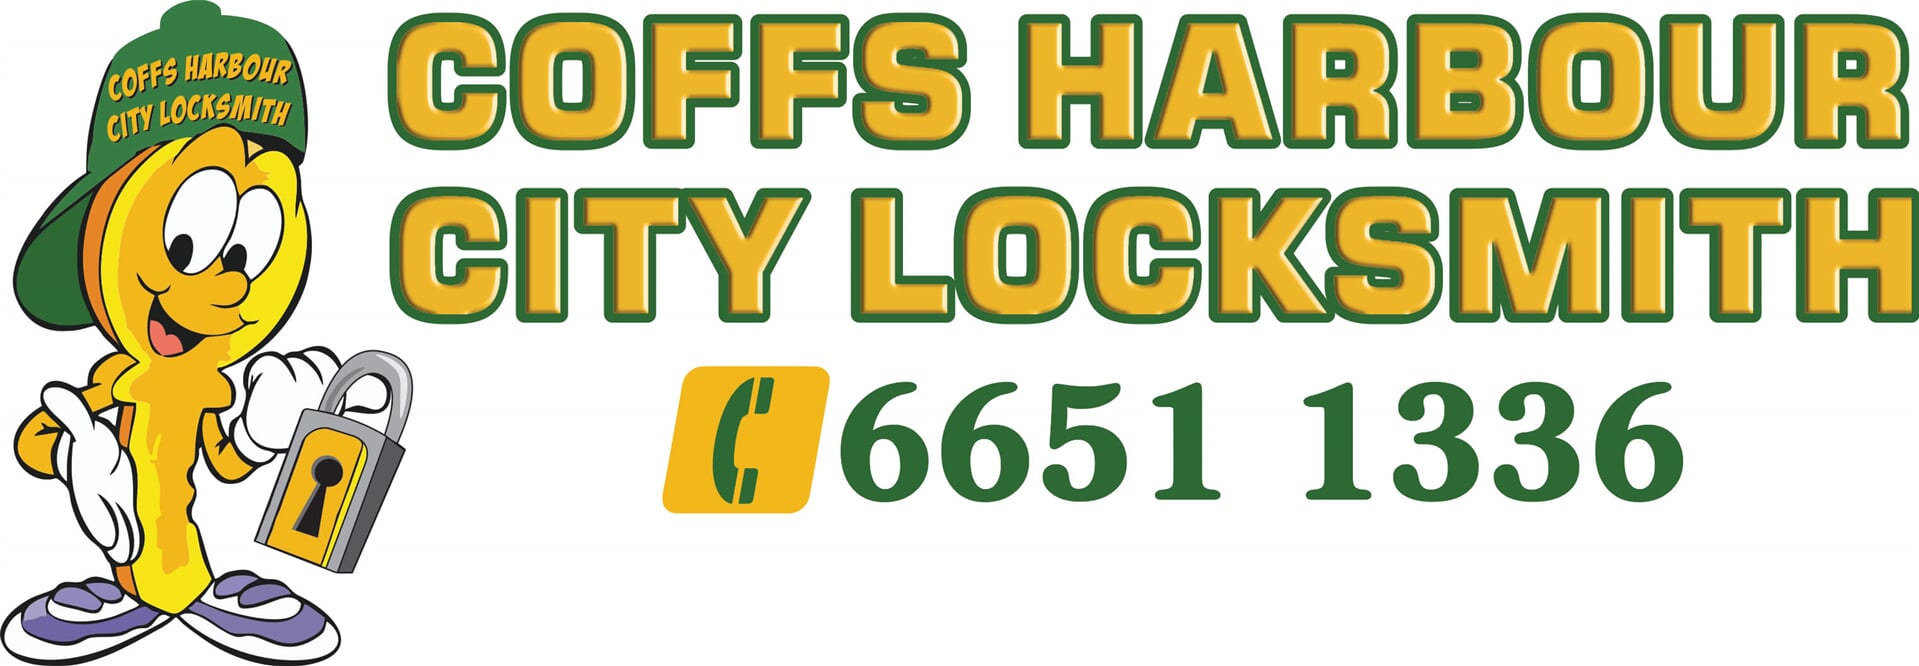 Coffs Harbour City Locksmiths